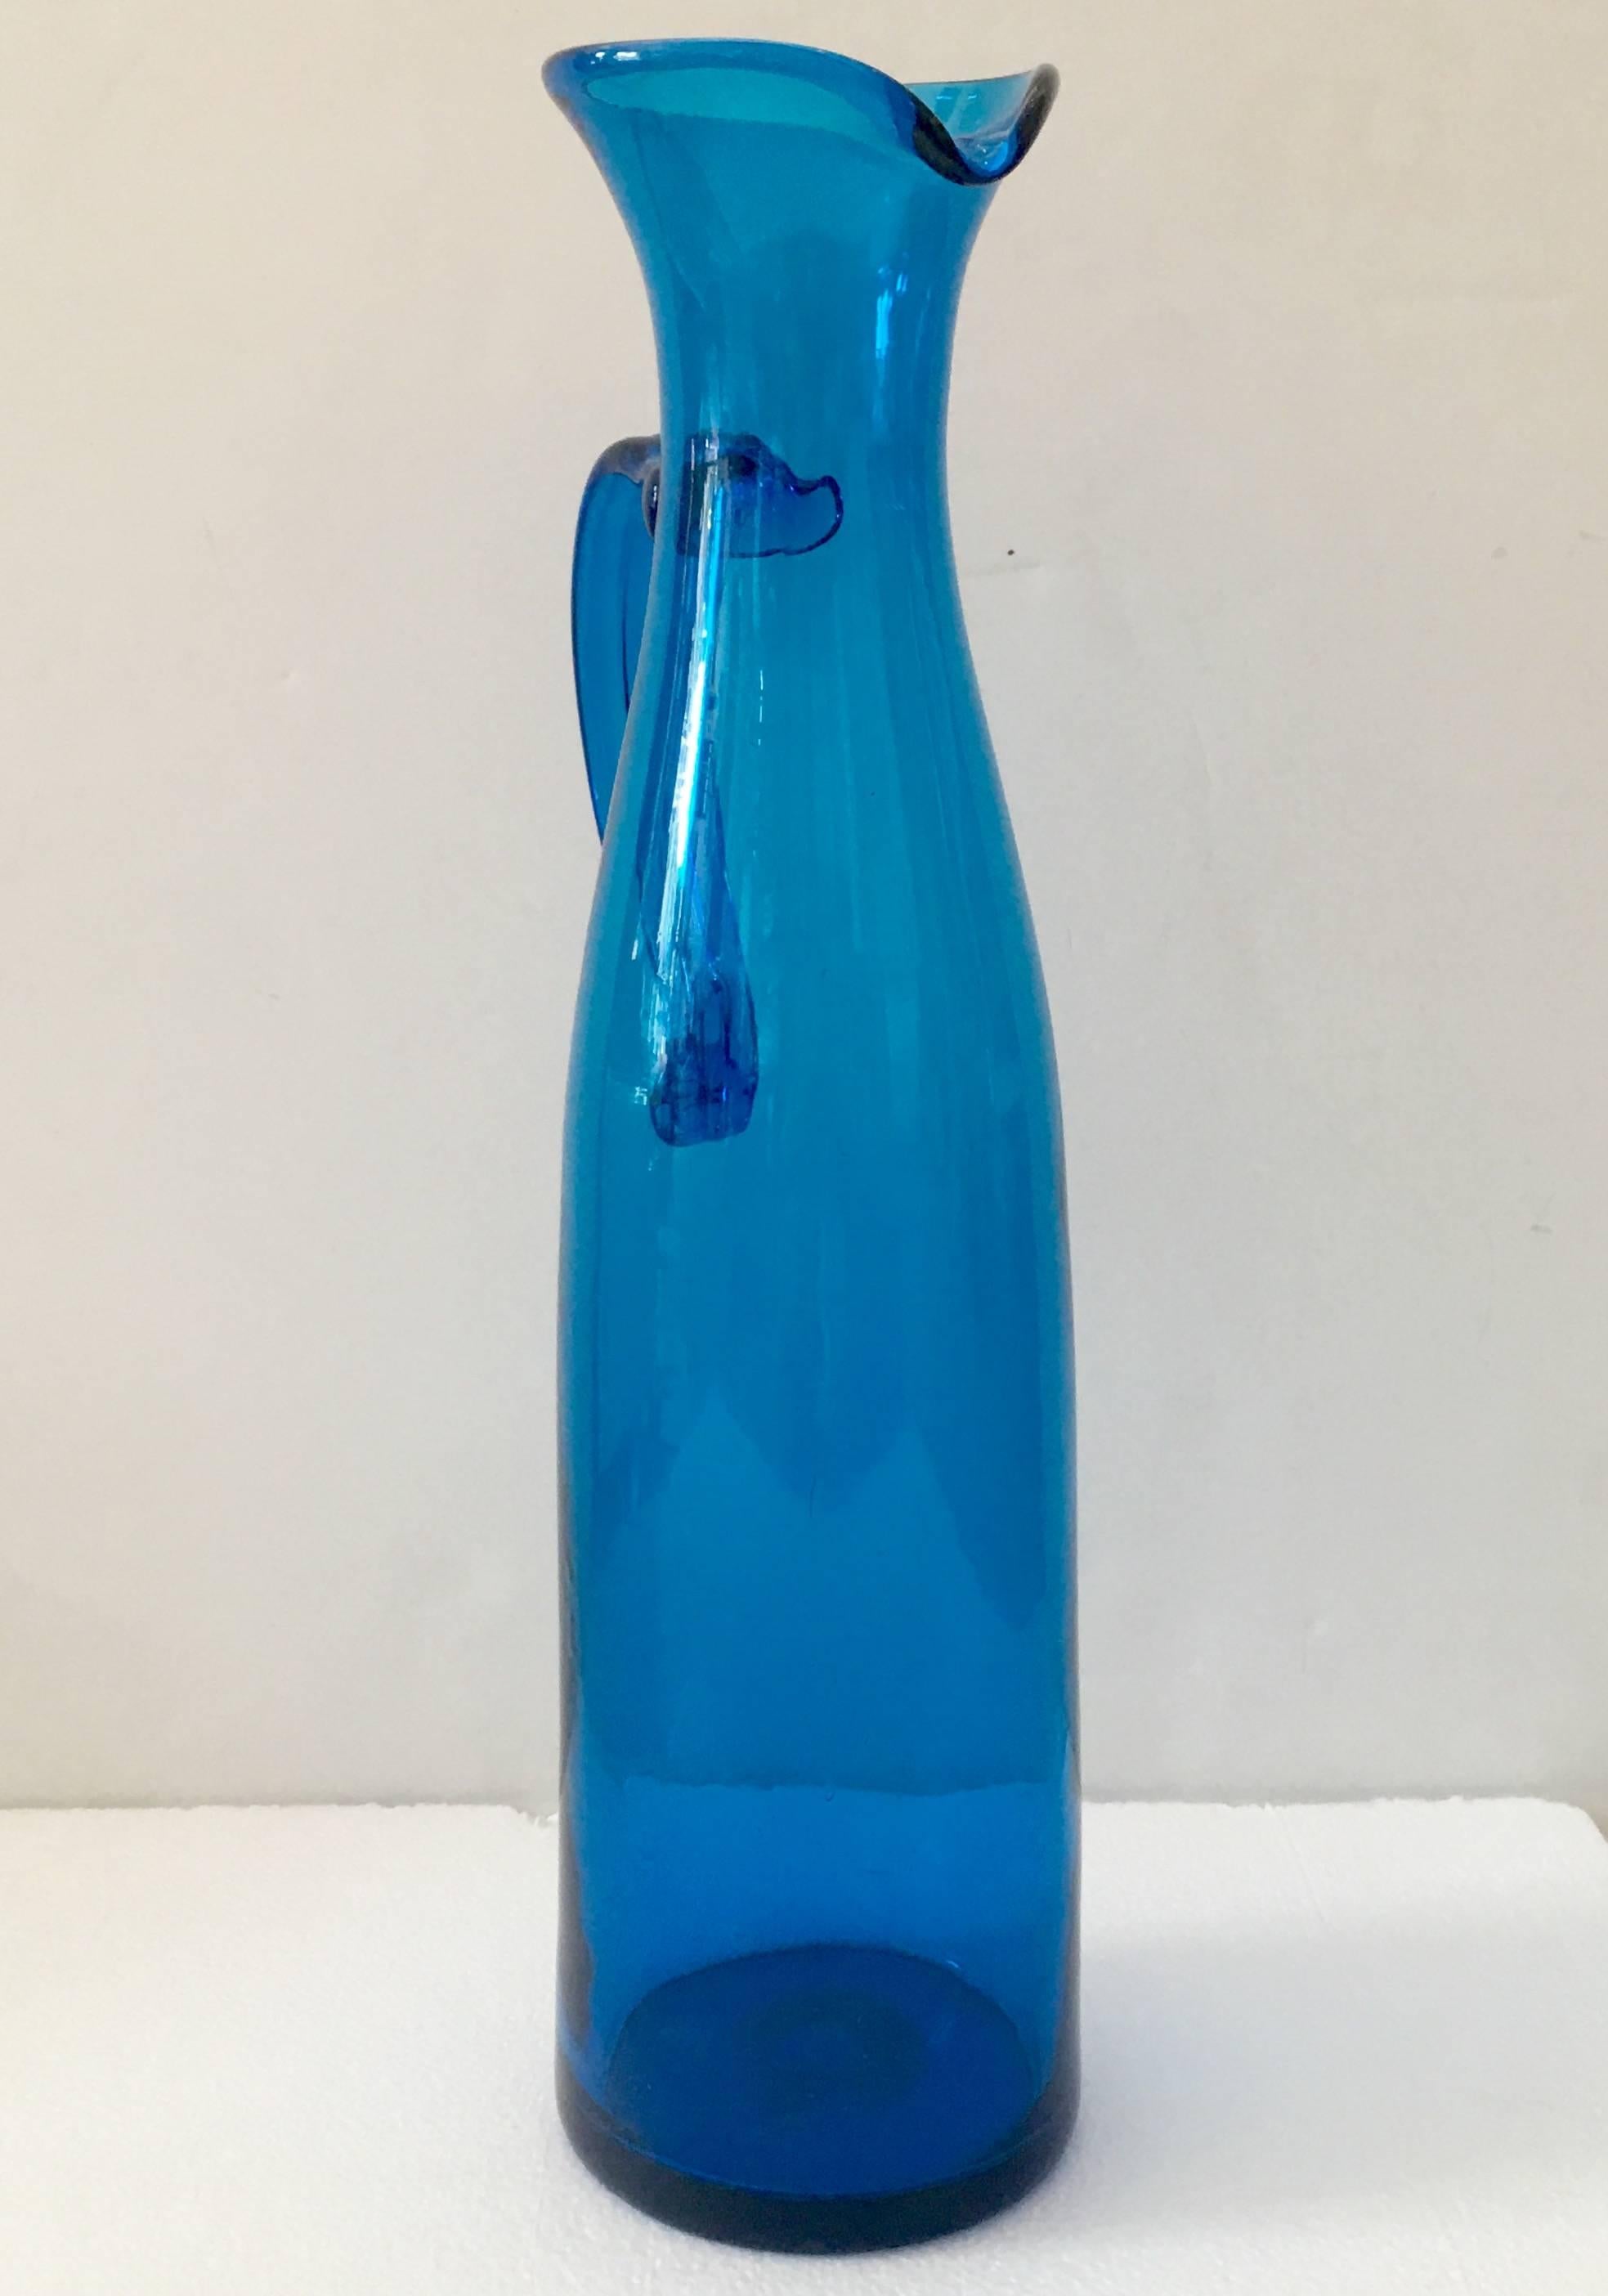 blenko blue pitcher